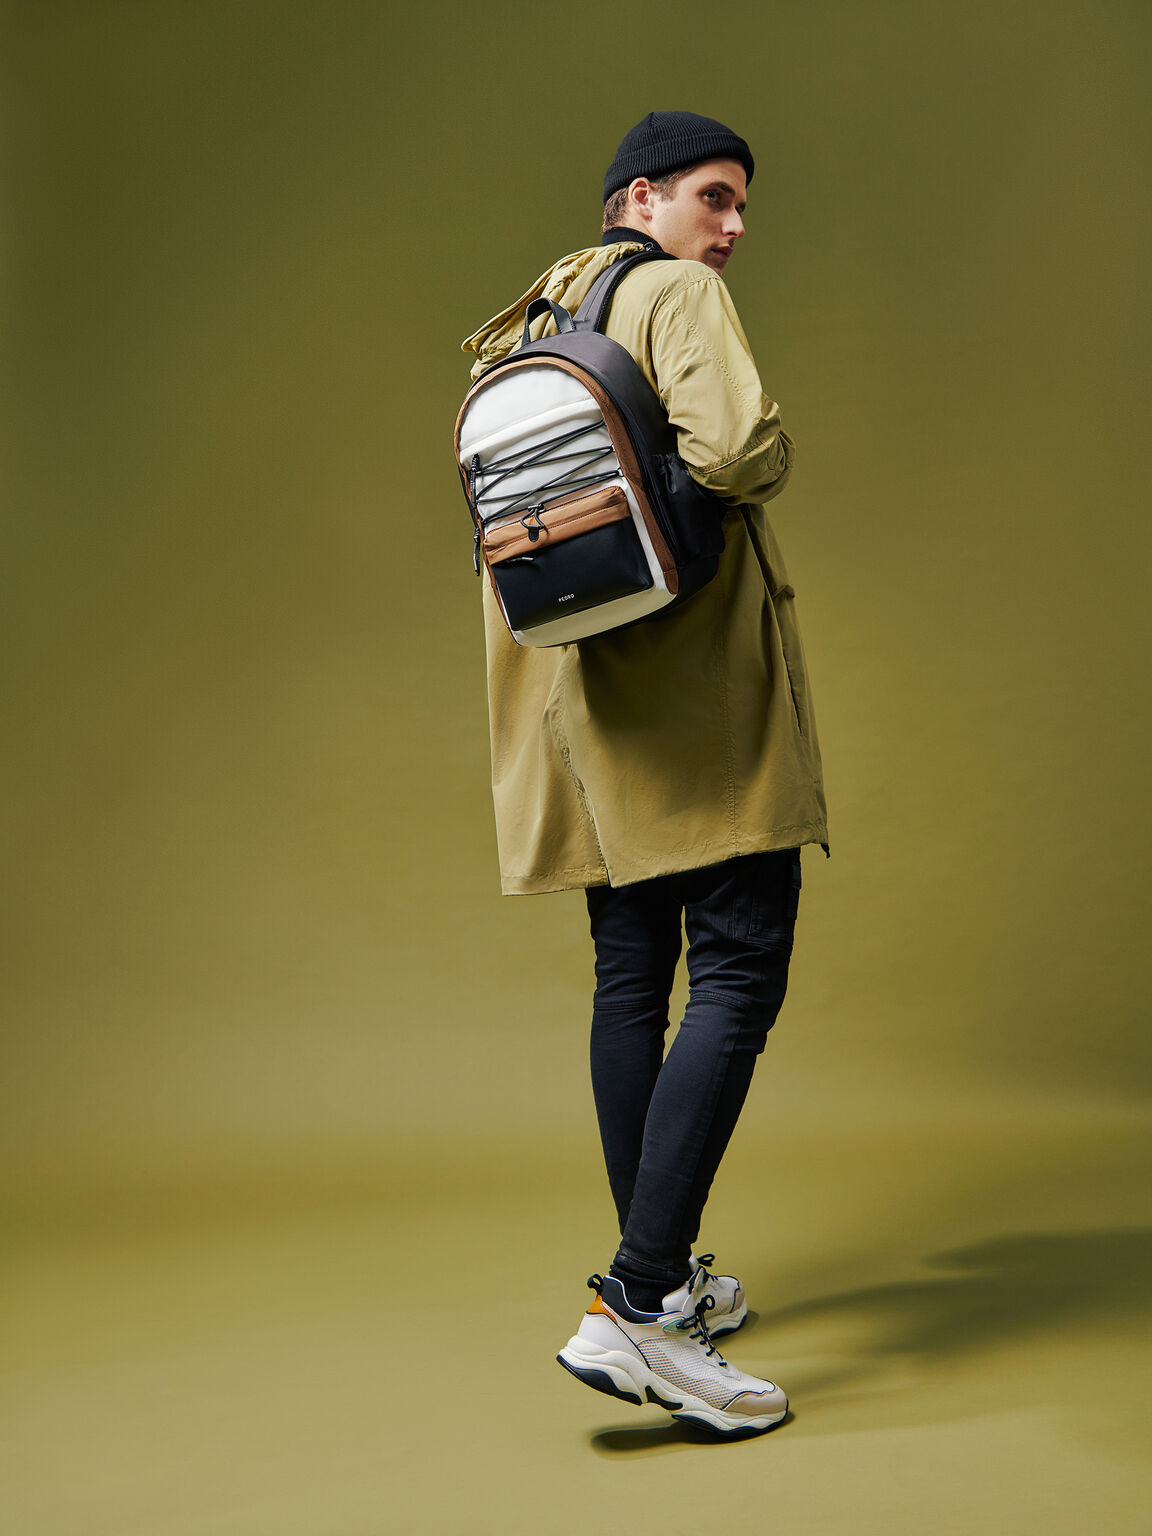 Nylon Backpack, Multi